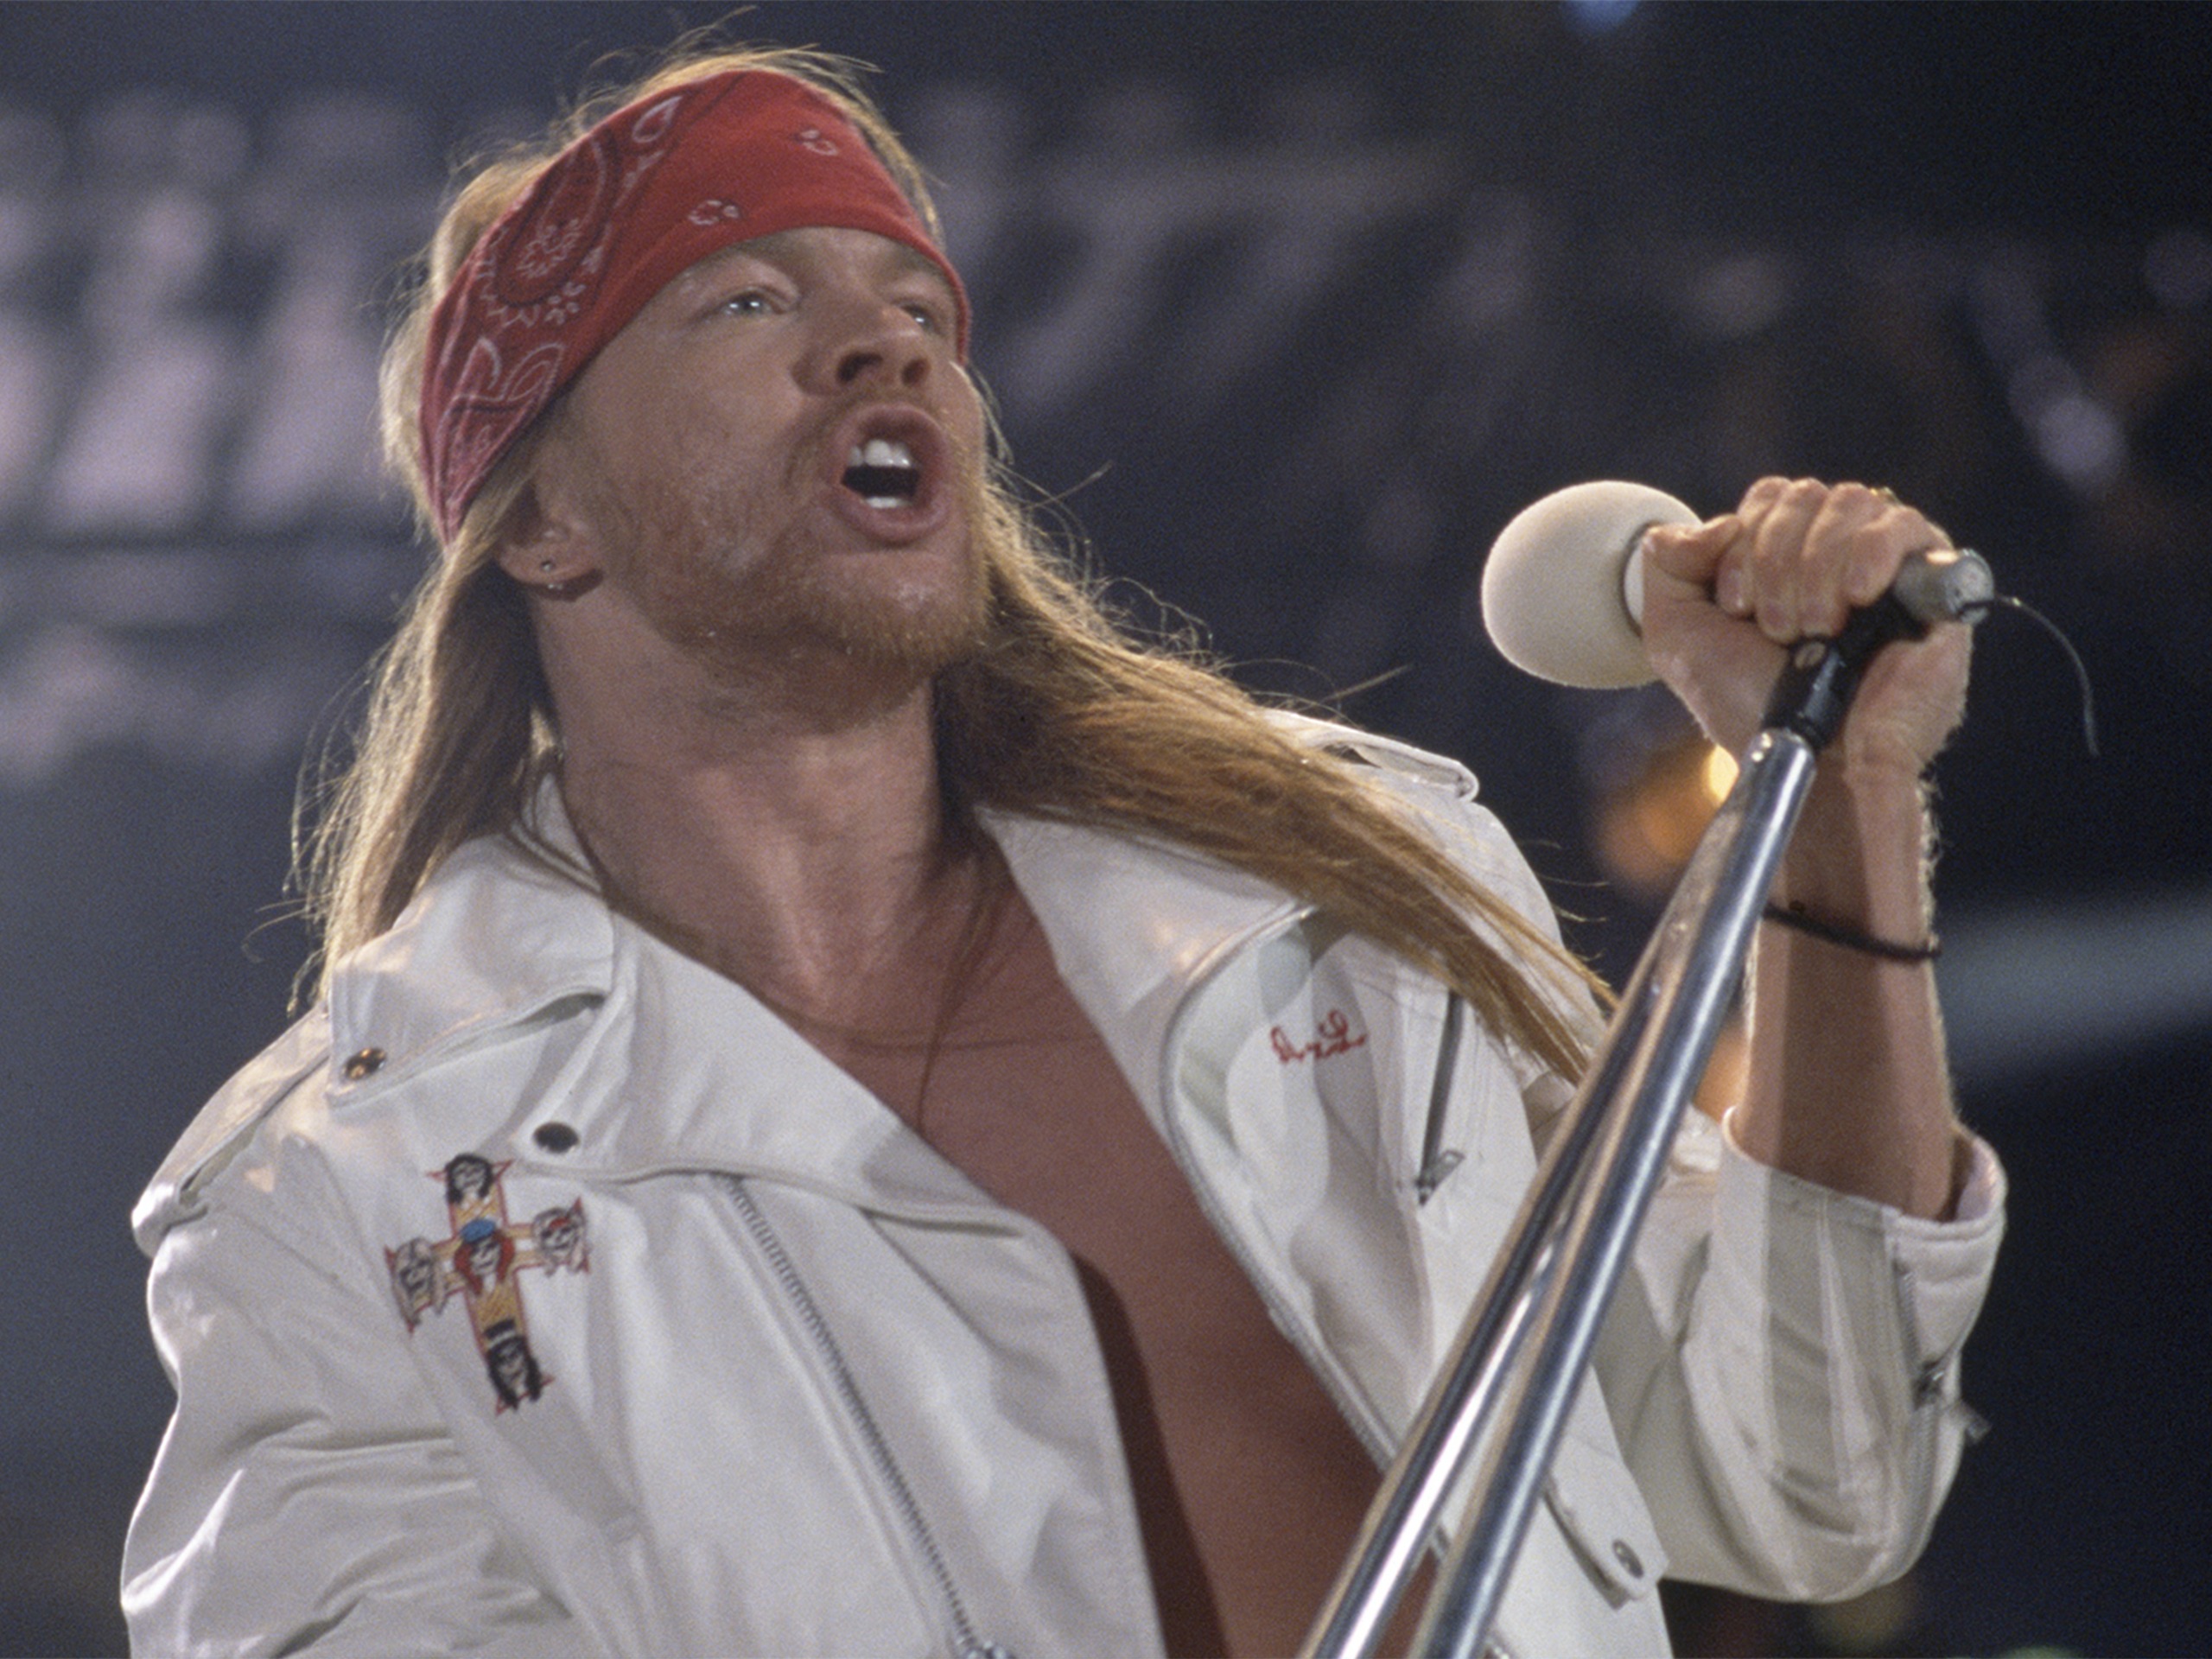 Axl Rose, vocalista de Guns N' Roses, fue acusado de agresión sexual 